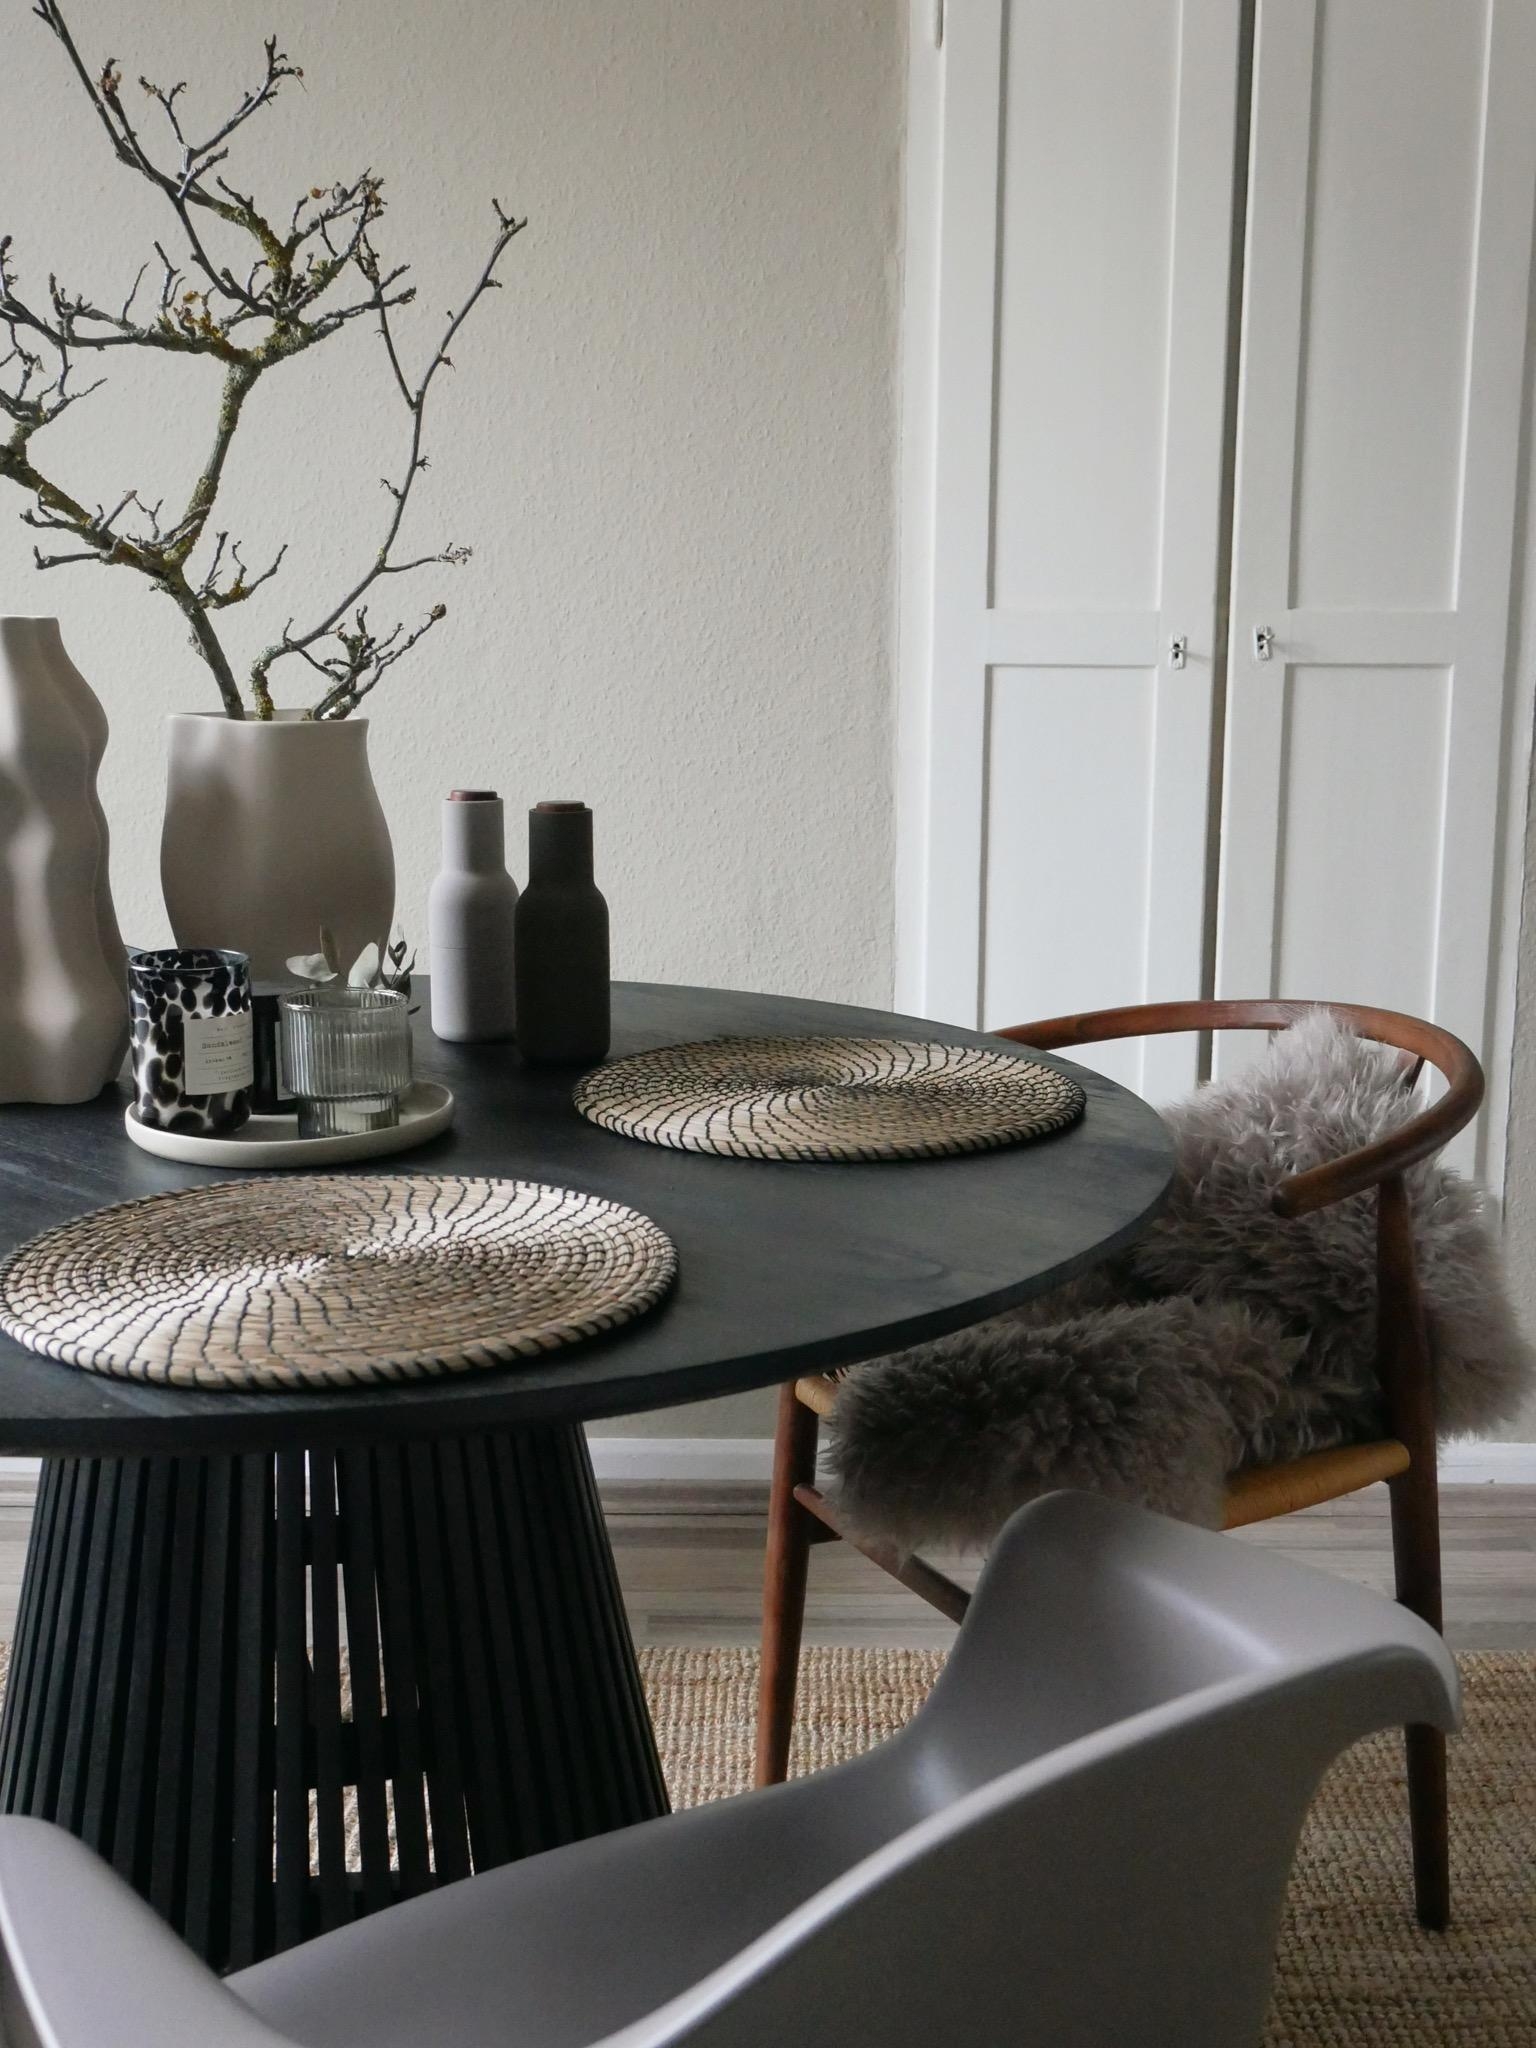 Kitchen Update #farrowandball #blackandnude #homedecor #interiordesign #couchstyle #diningarea #tablesituation